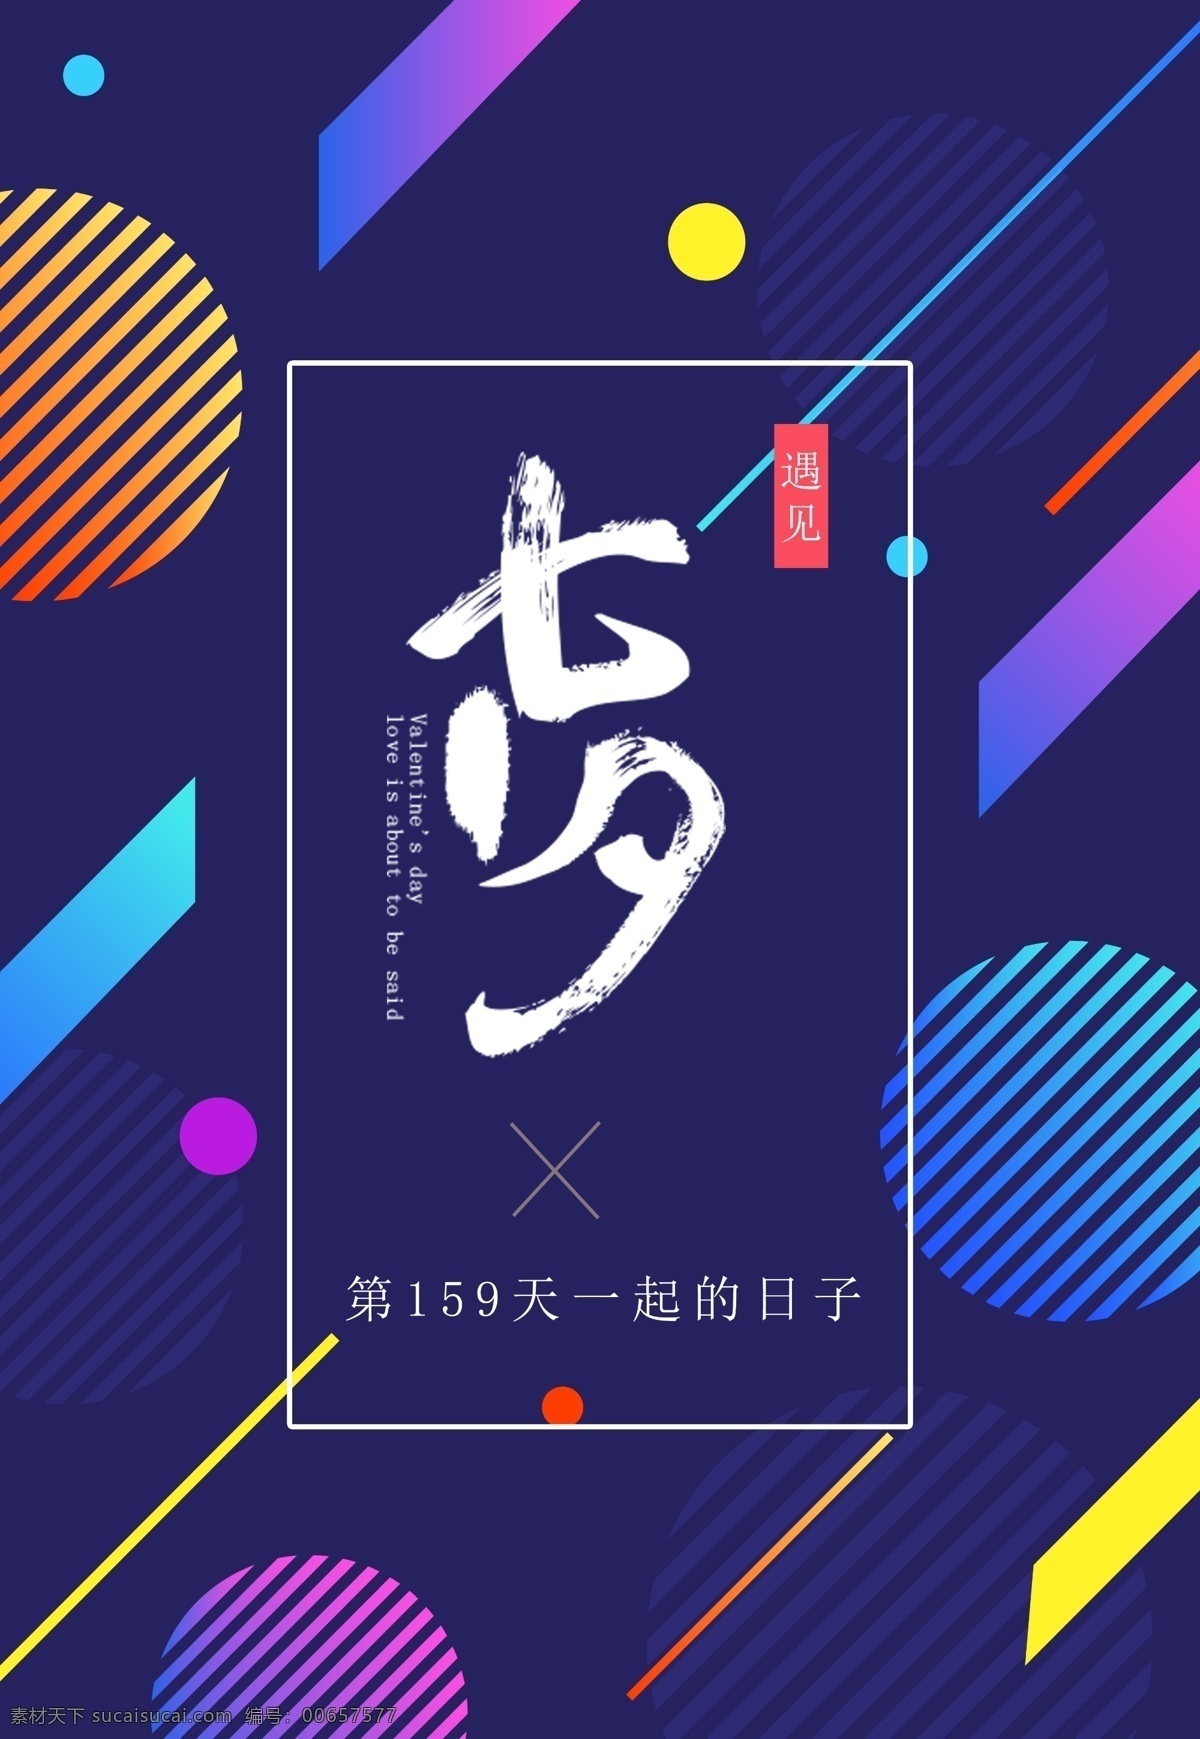 浪漫 情 定 七夕 促销 宣传海报 模板 海报 节日 蓝紫